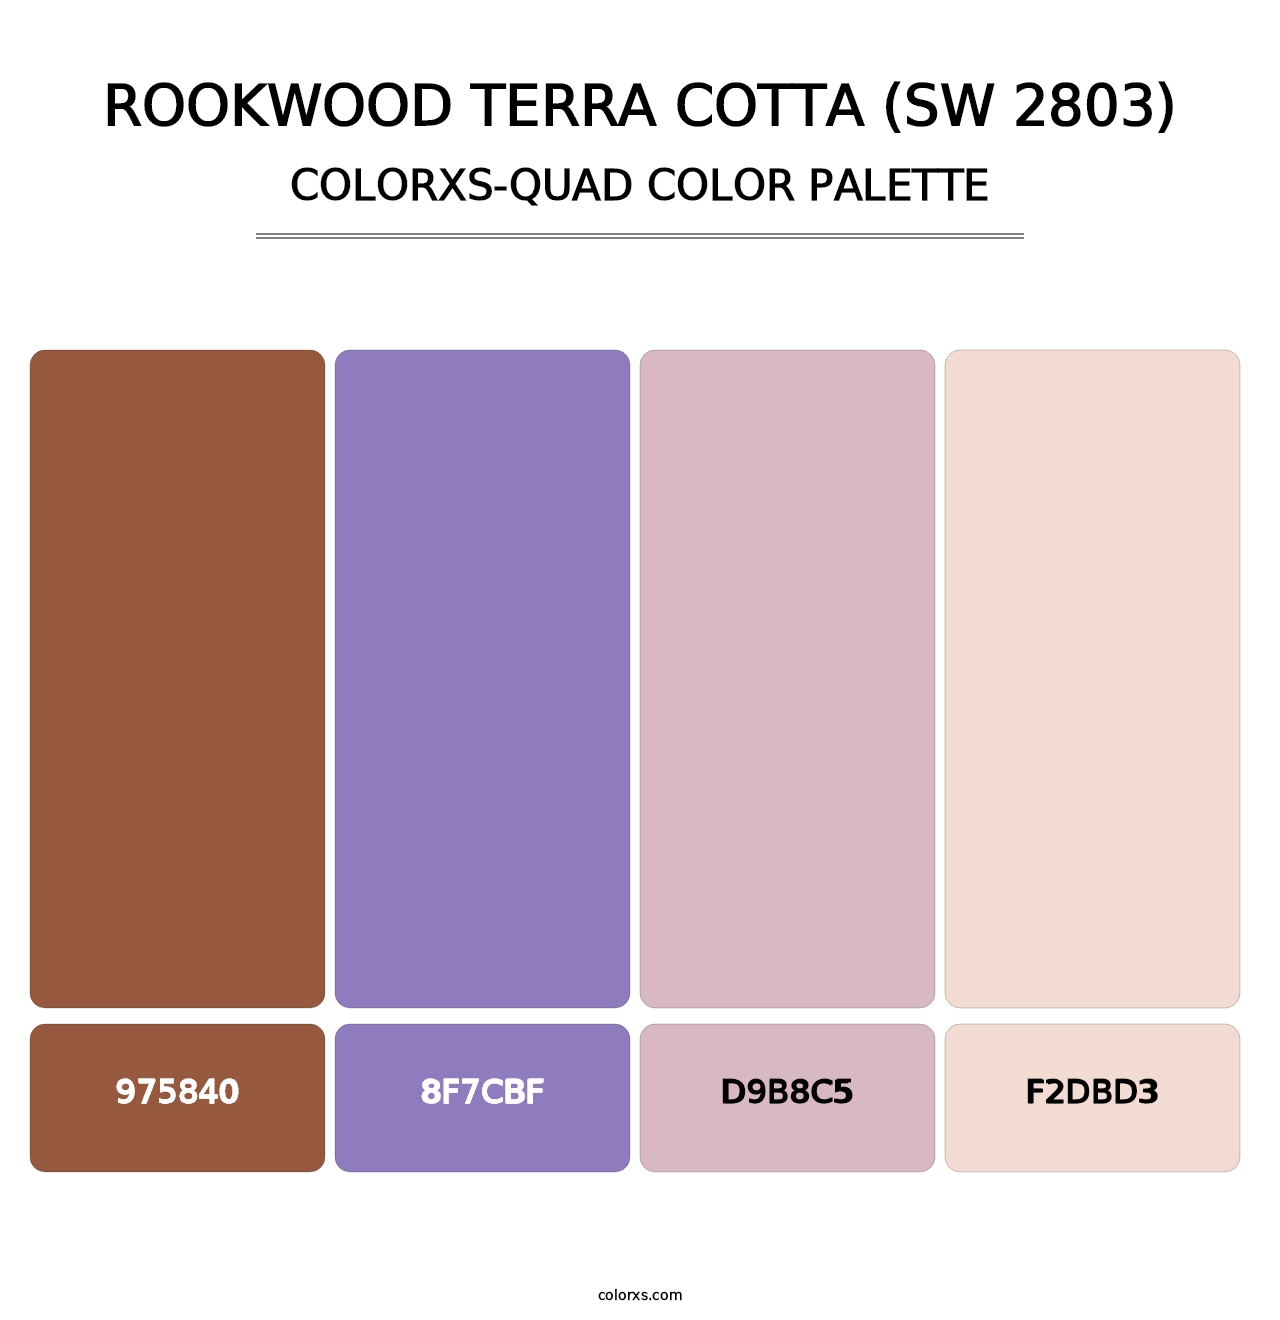 Rookwood Terra Cotta (SW 2803) - Colorxs Quad Palette